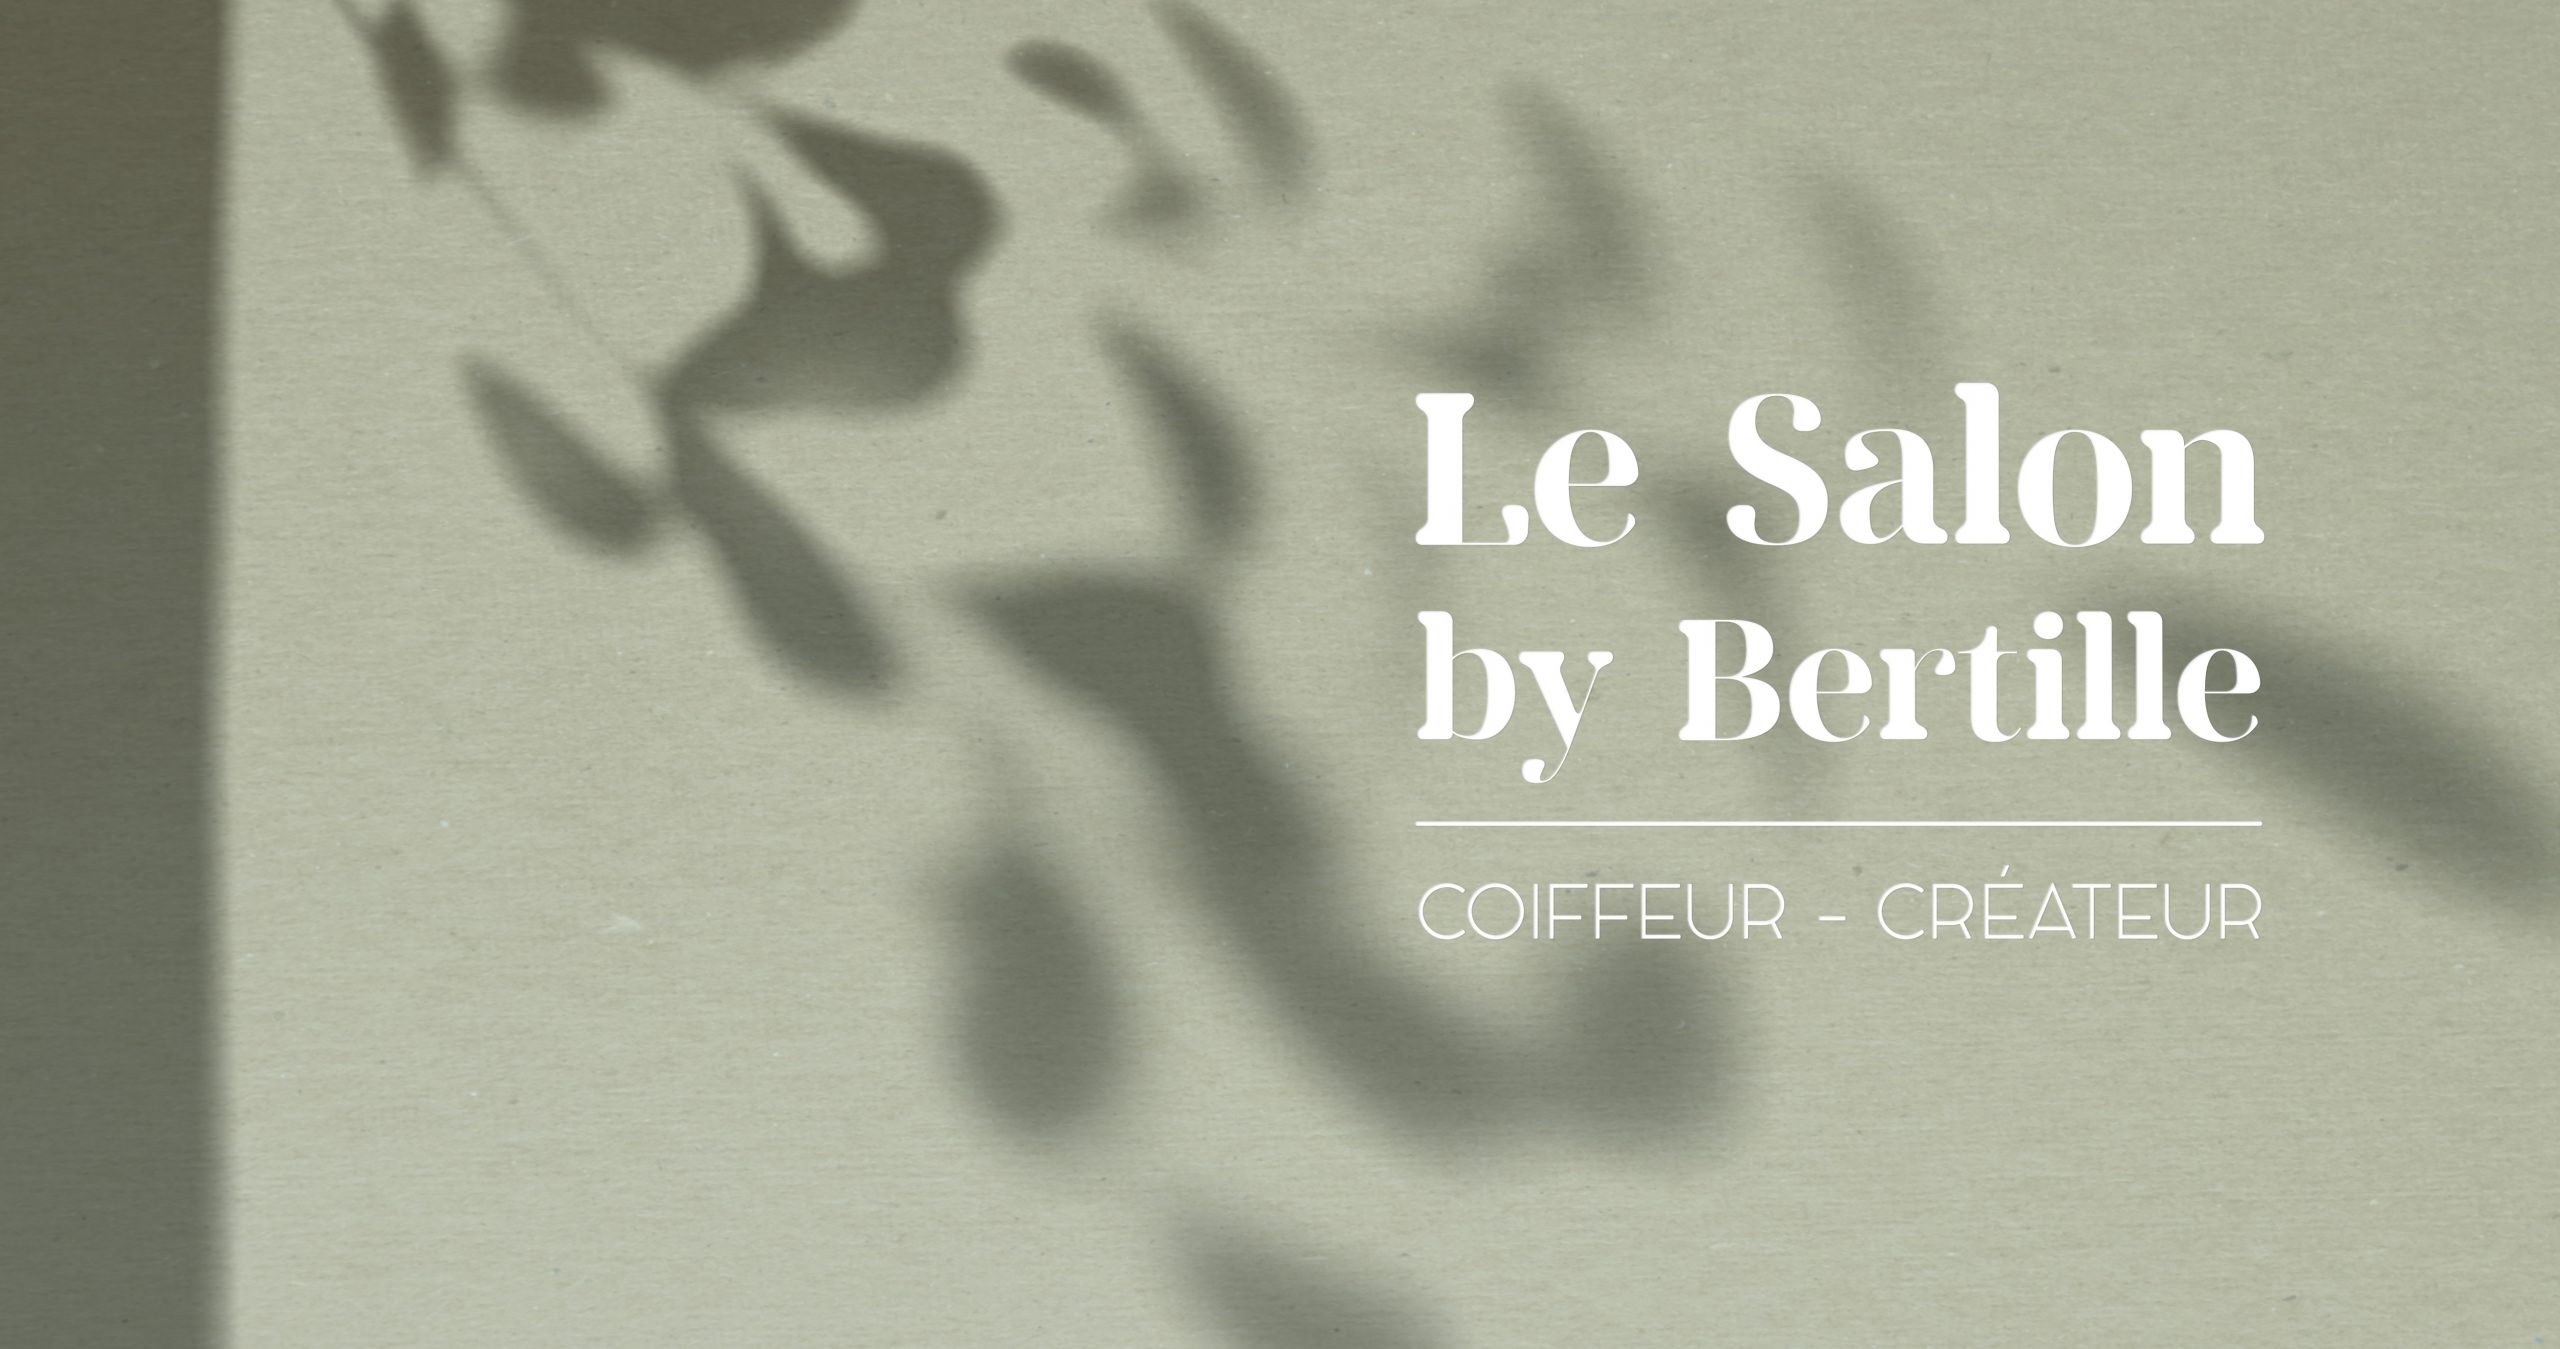 Visuel ambiance avec logo Le Salon by Bertille - Sarah La Selva